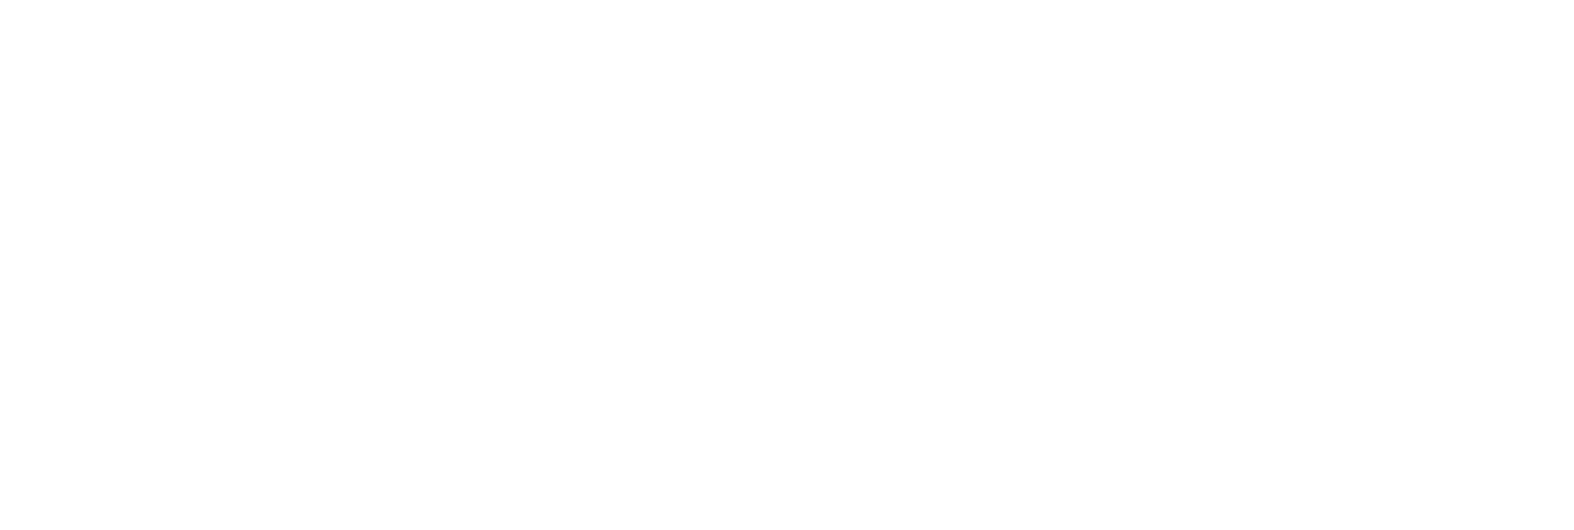 XOS Logo groß für dunkle Hintergründe (transparentes PNG)